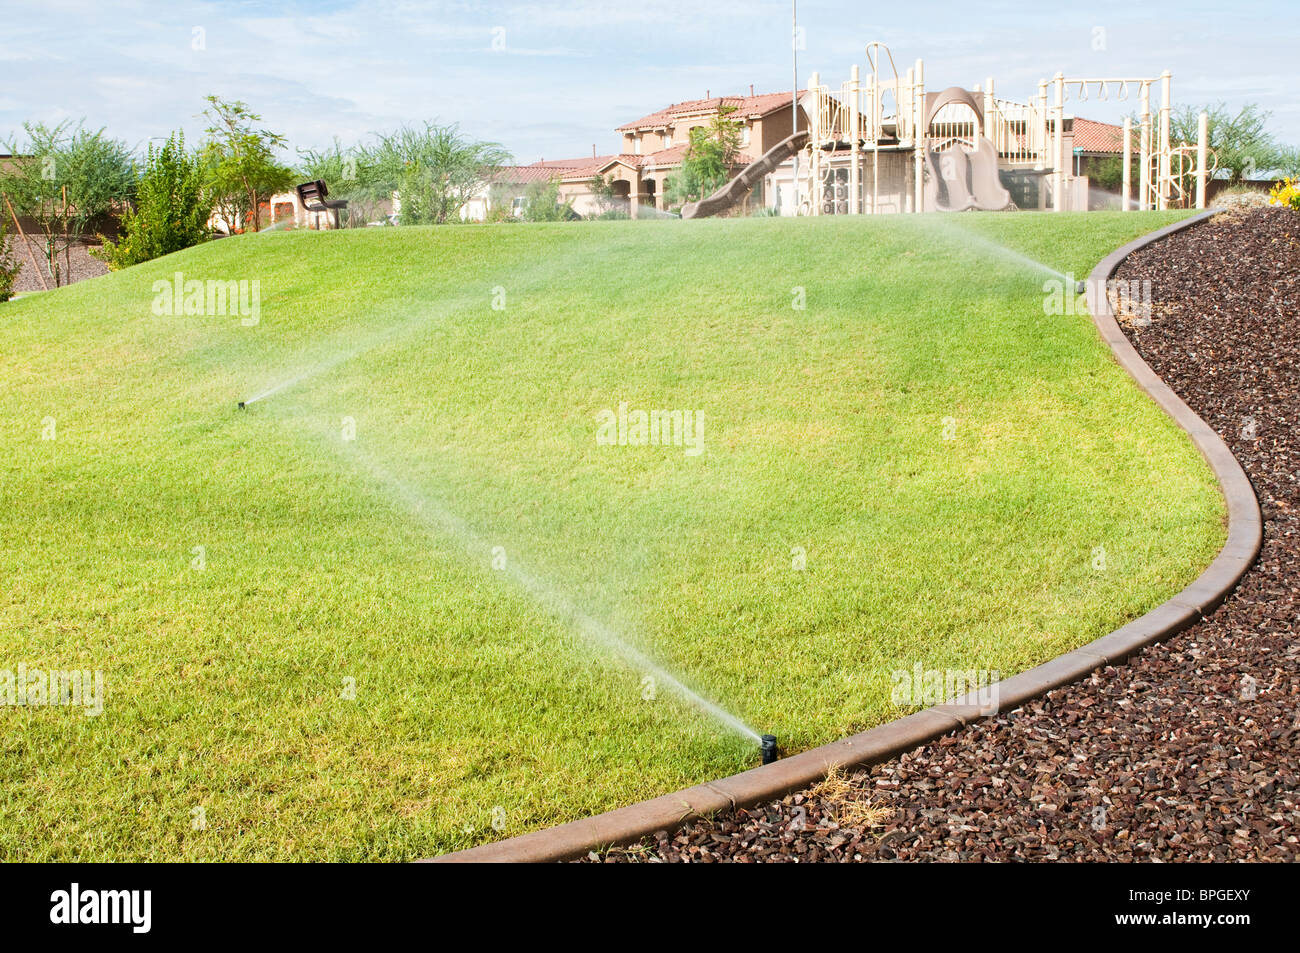 Un arrosage automatique est utilisé pour l'eau l'herbe dans un parc de la ville de l'Arizona. Banque D'Images